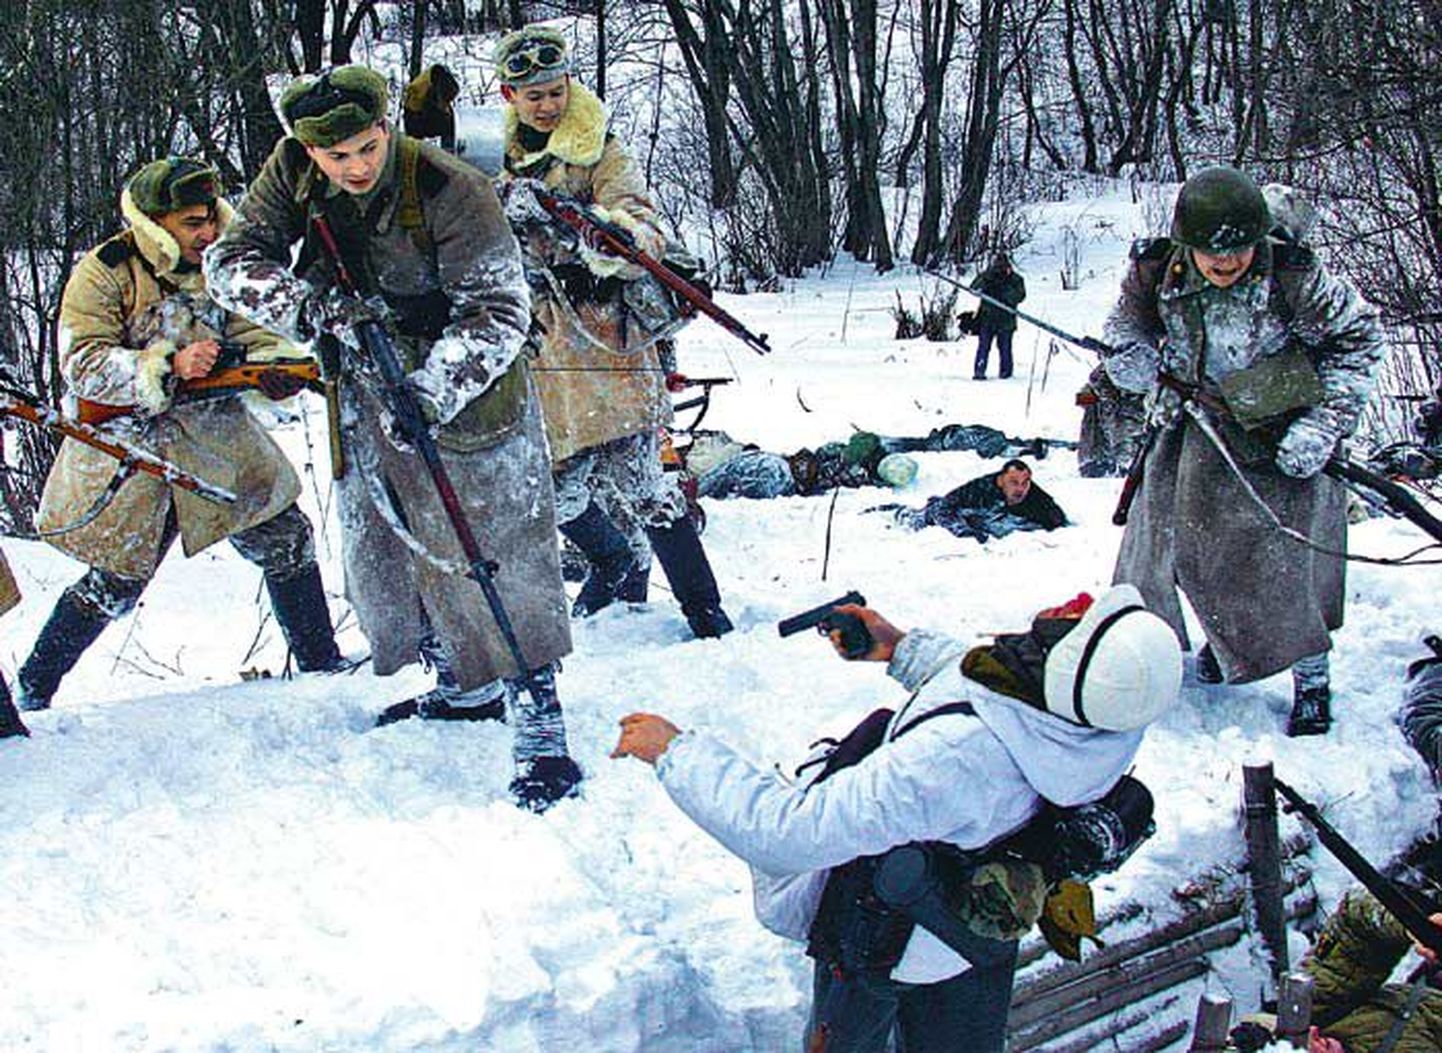 Teise ilmasõja aegsetes valgetes maskeerimisrõivastes Saksamaa ja Punaarmee sõdurite jäljendajad etendasid jaanuari lõpus Peterburi lähedal näiliselt verist lahingut, tähistamaks 62 aasta möödumist sakslaste blokaadi murdmisest tolleaegse Leningradi all.